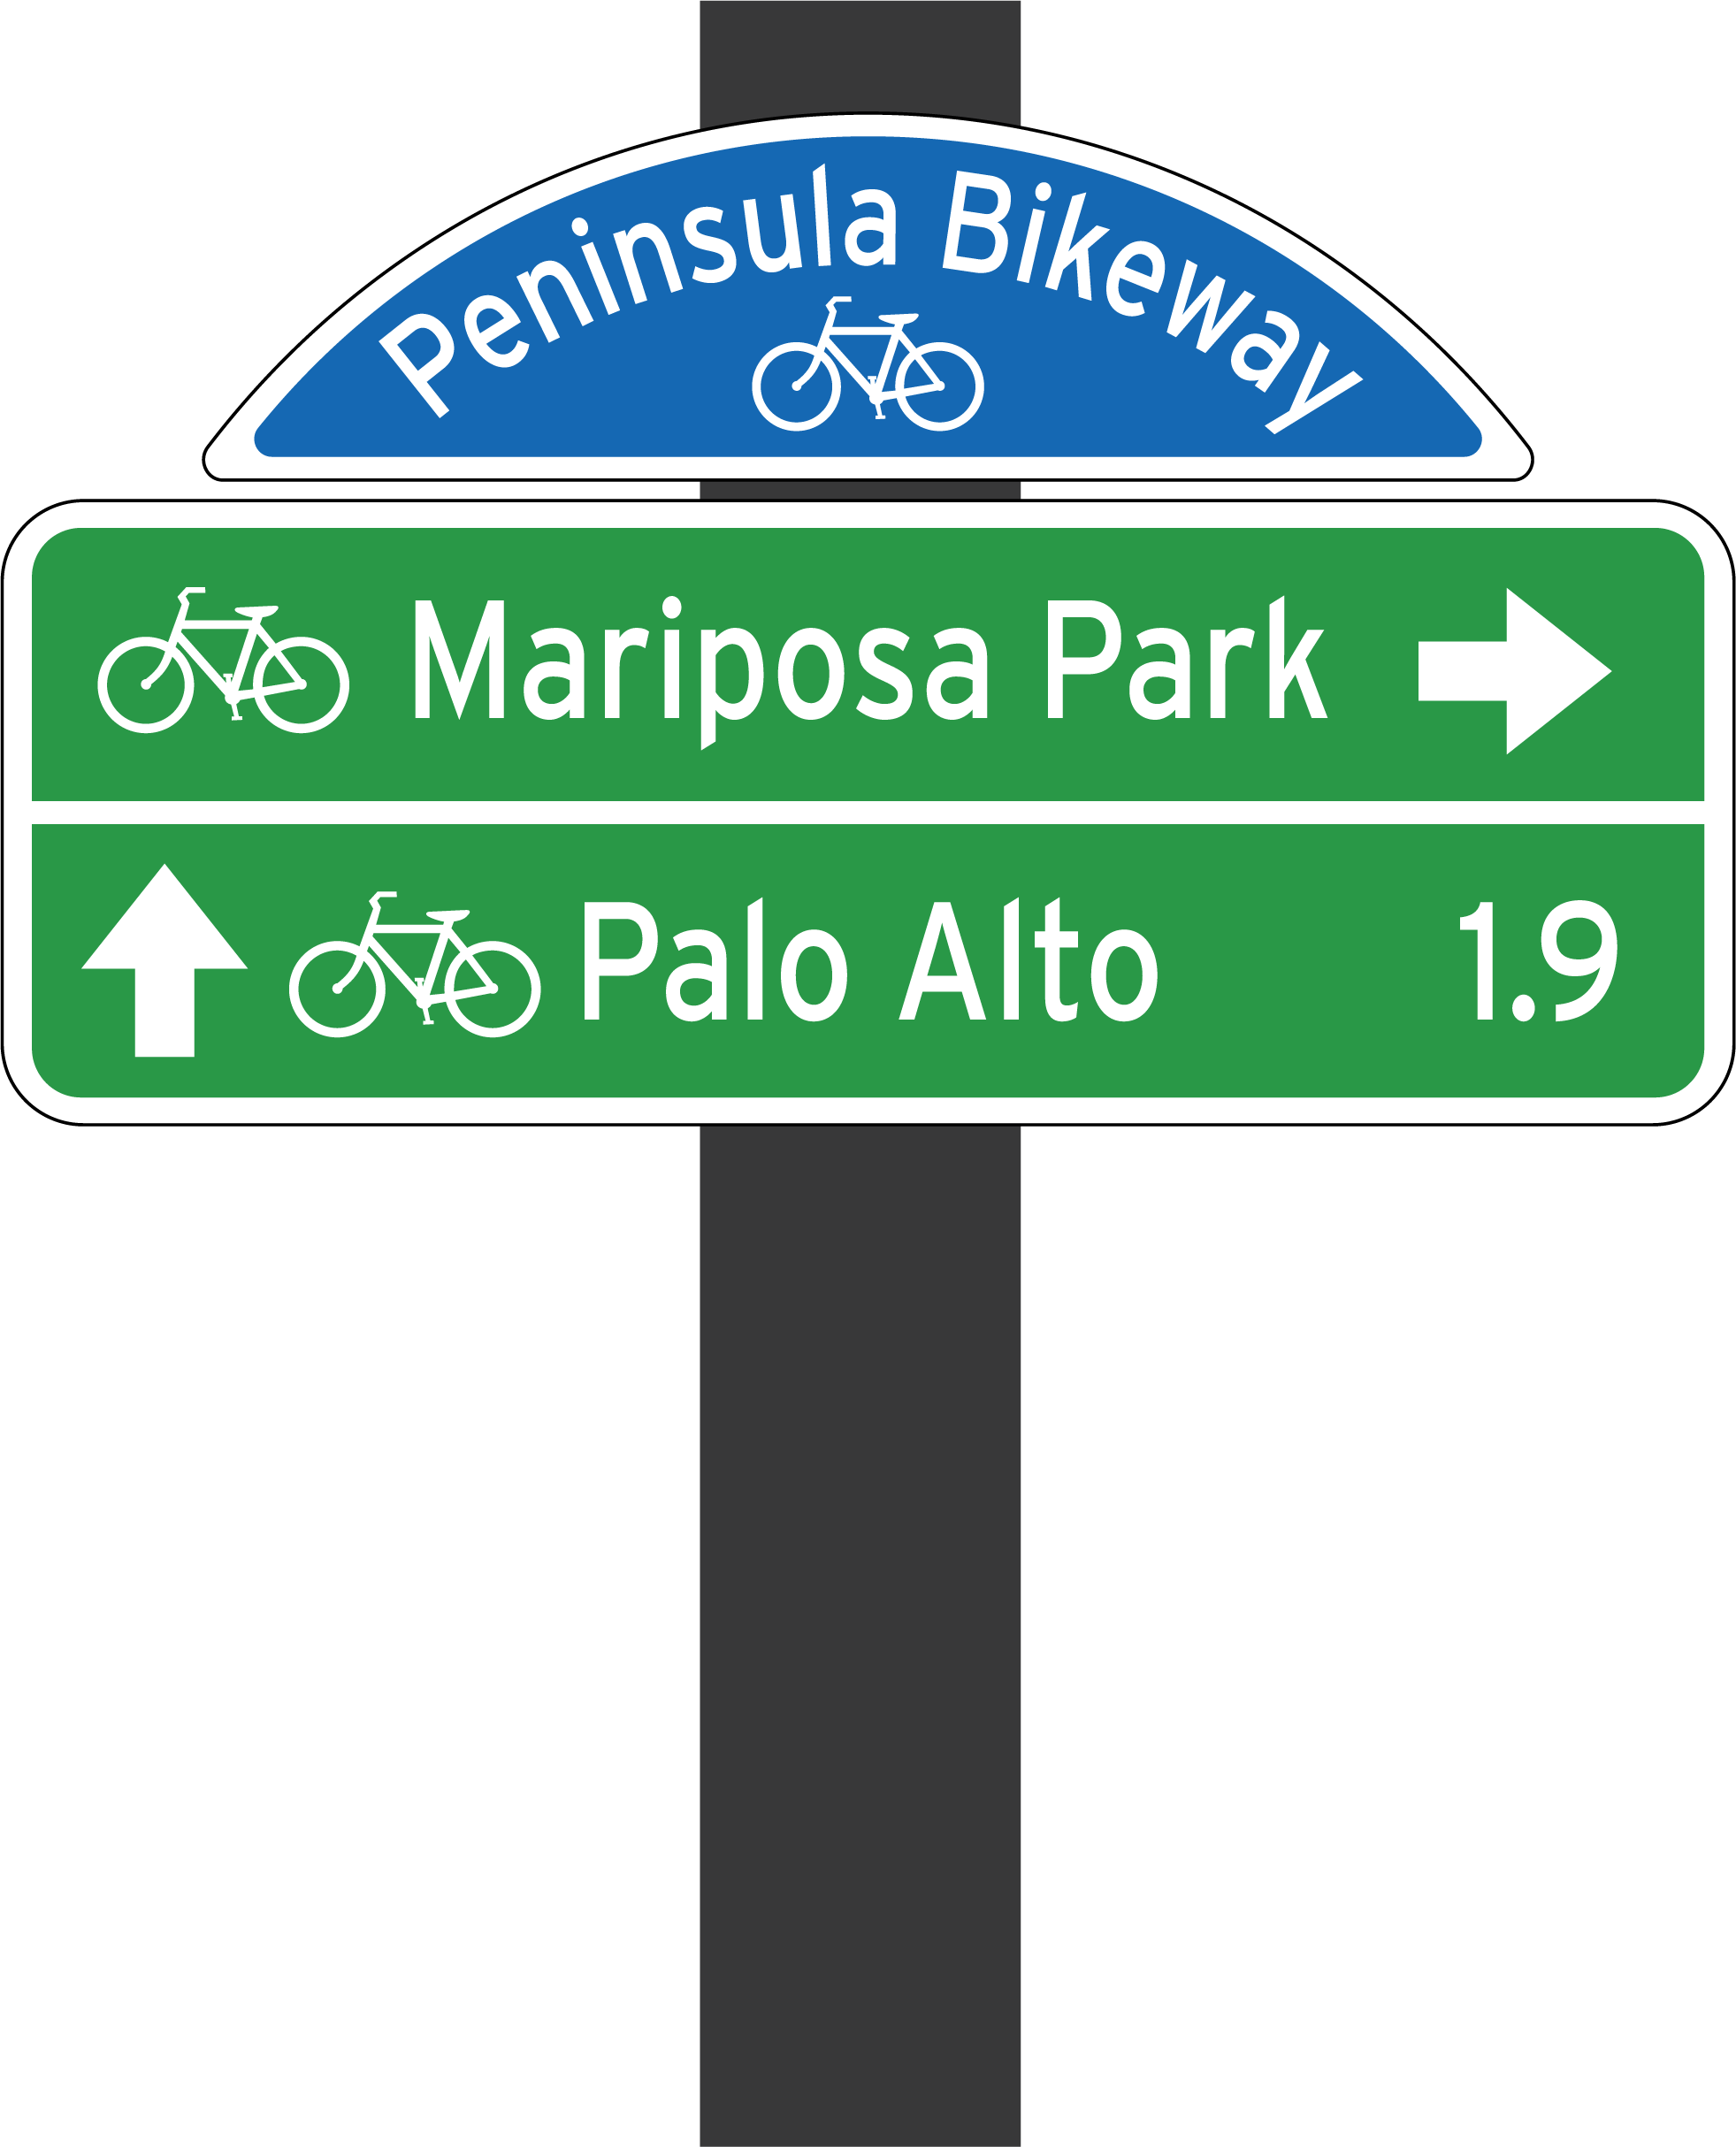 Menlo-Park-SRTS-Wayfinding-Peninsula-Bikeway.png